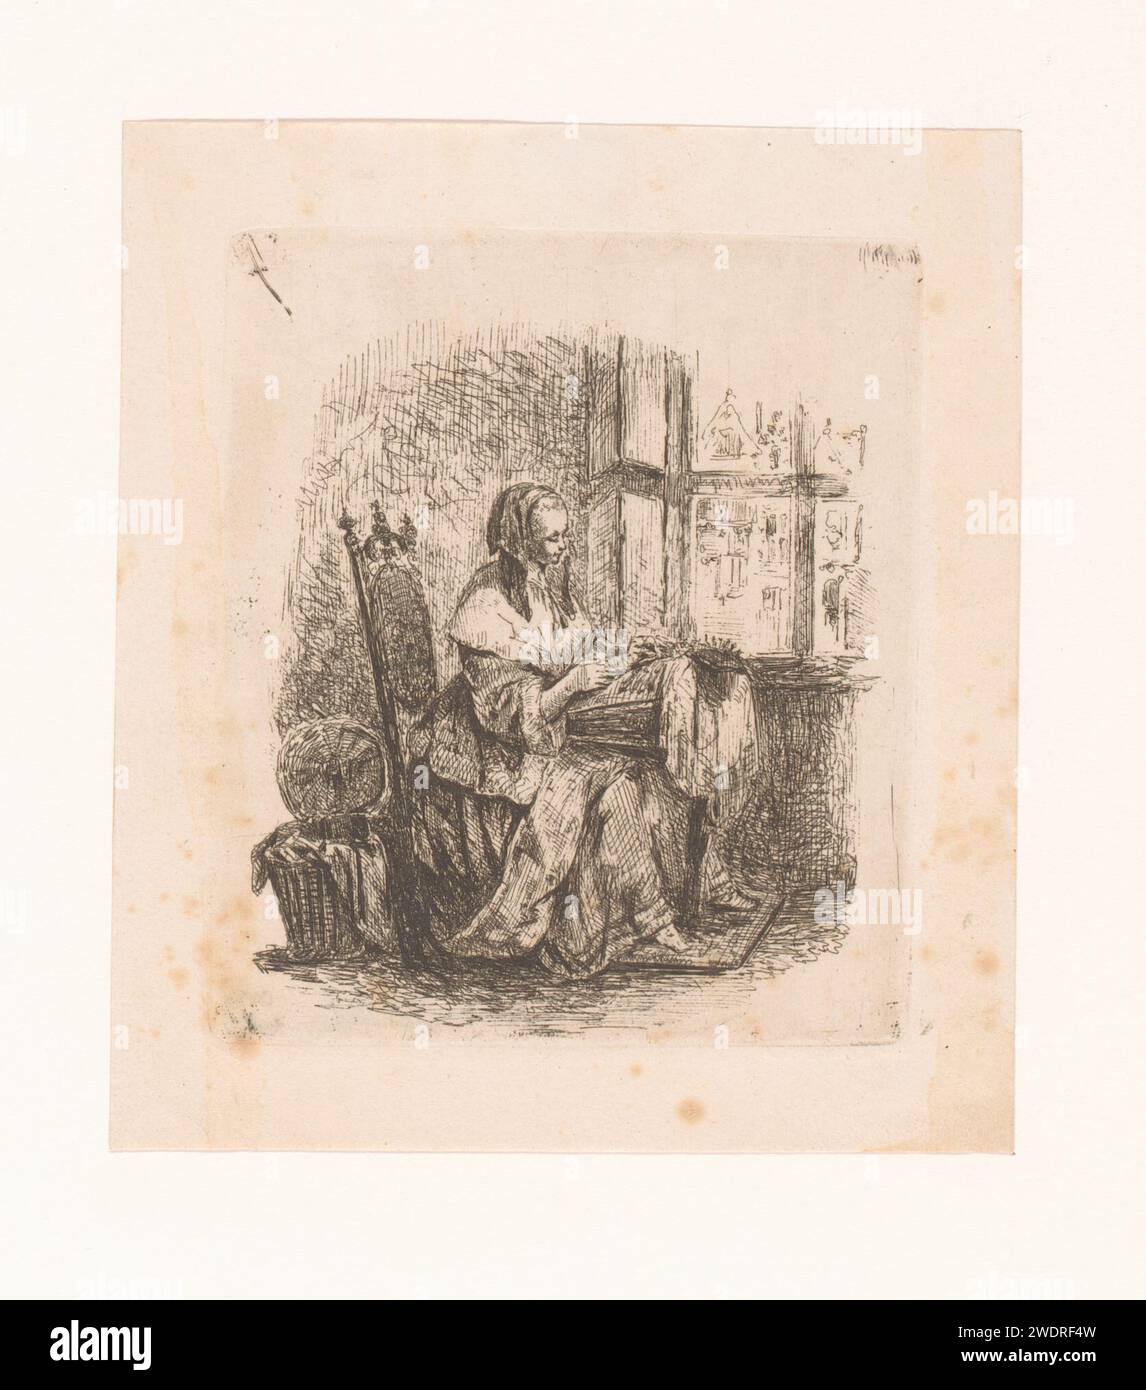 Jeune lace, Adrien Joseph Verhoeven -ball, 1834 - 1882 gravure sur papier imprimé / dentelure à pointe sèche Banque D'Images